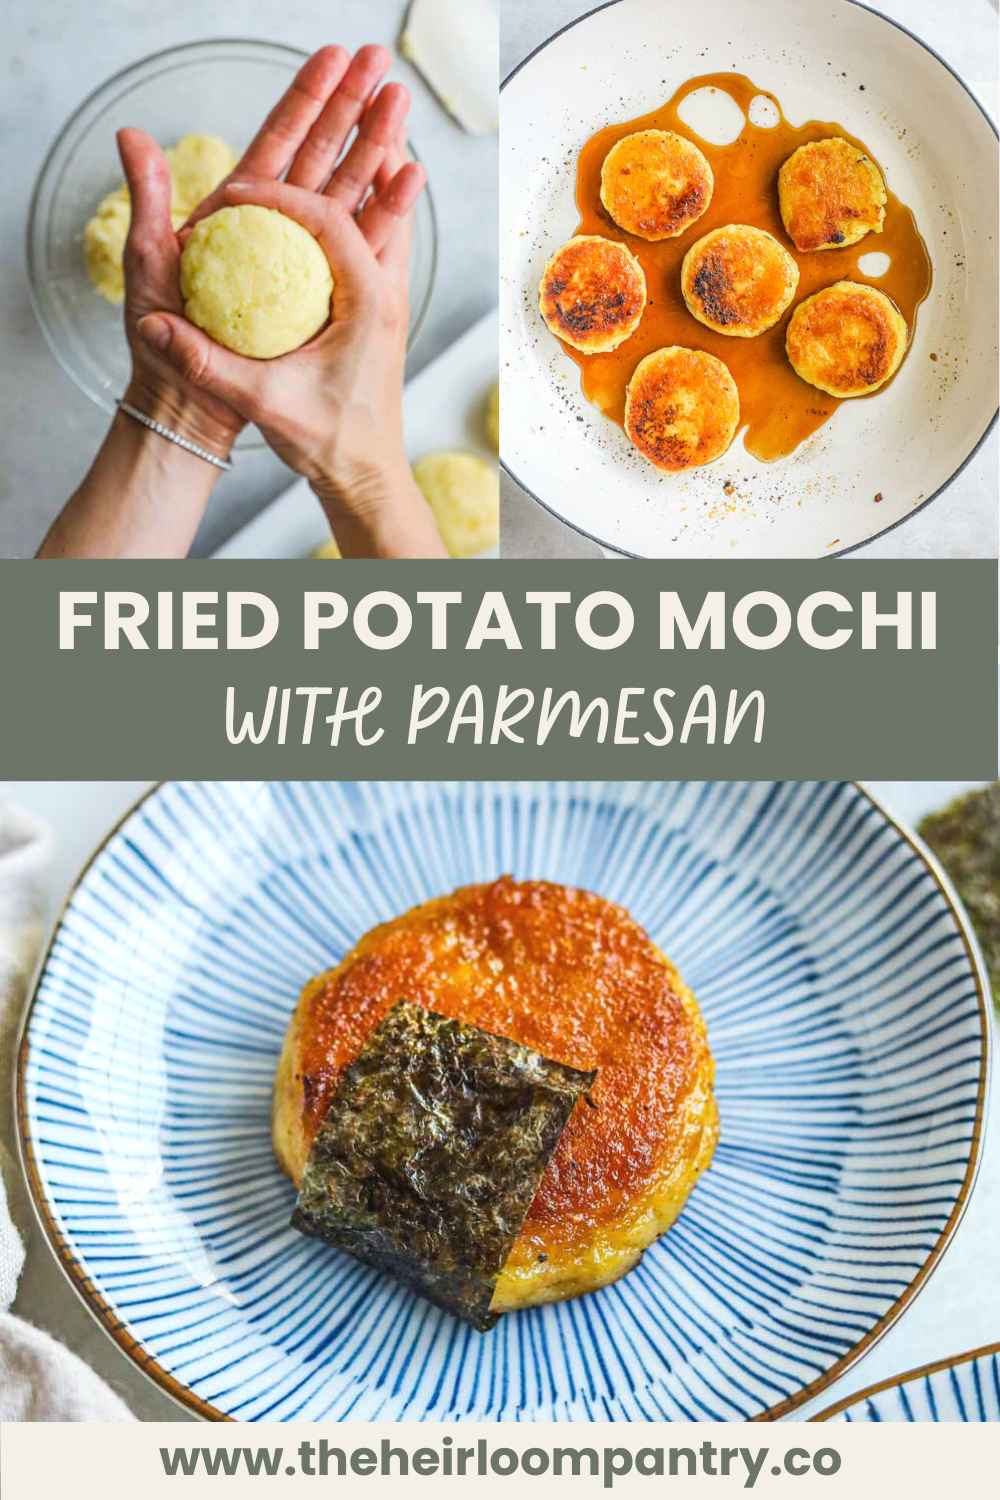 Fried potato mochi with parmesan Pinterest Pin.